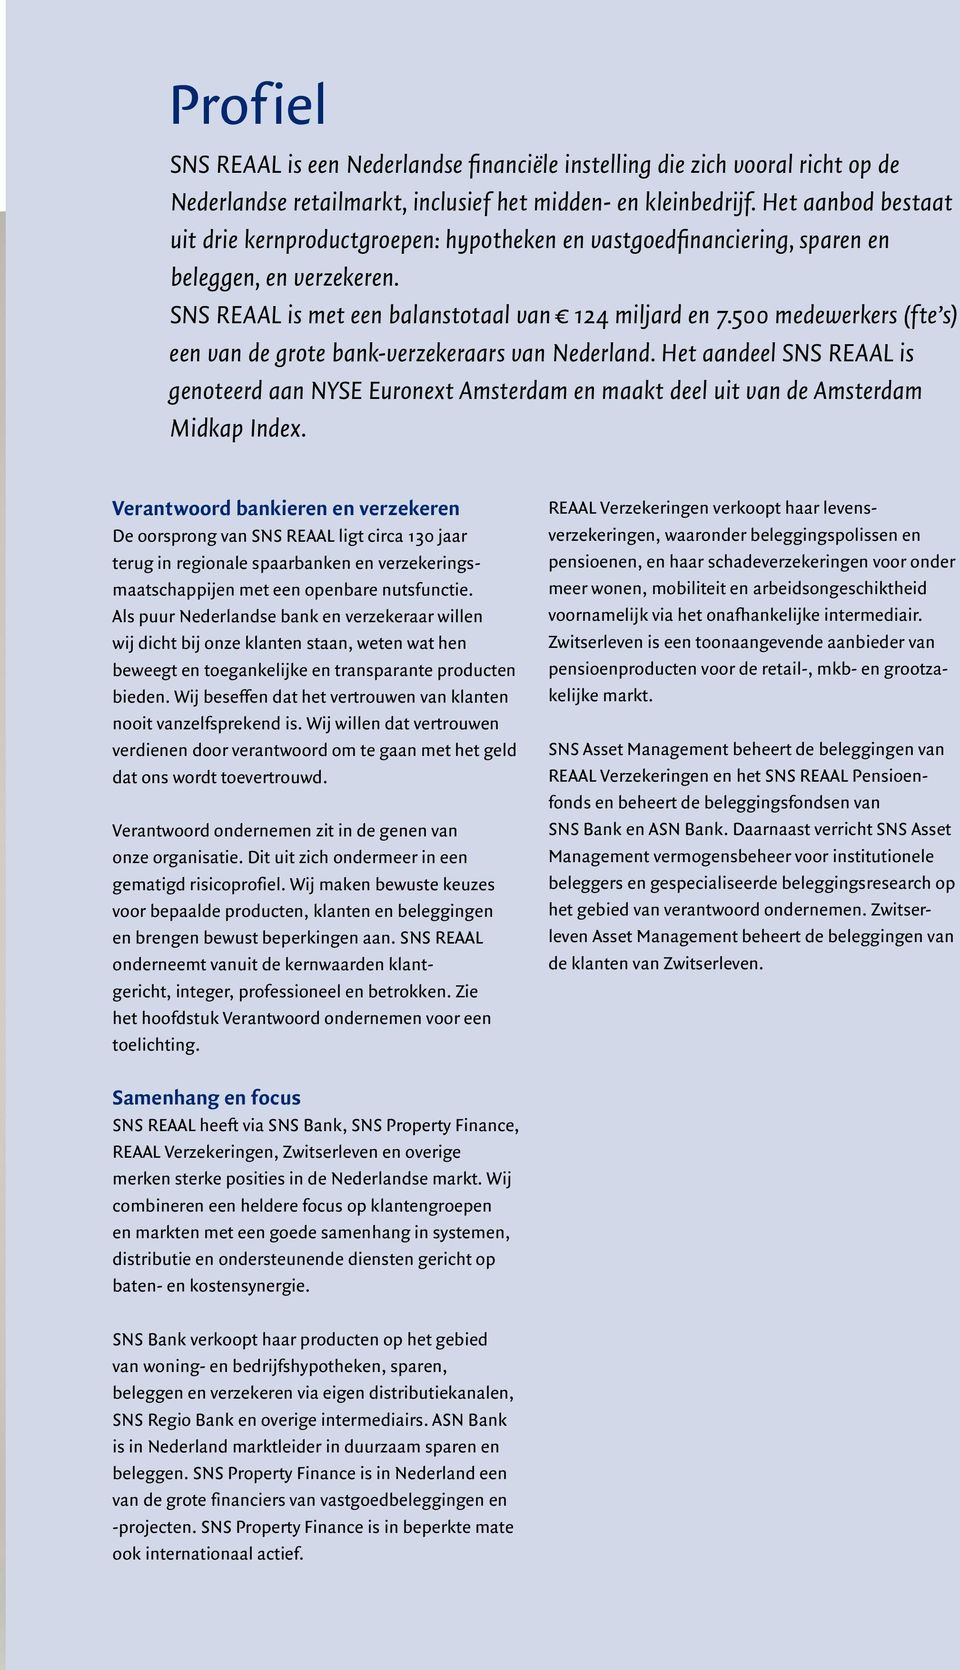 500 medewerkers (fte s) een van de grote bank-verzekeraars van Nederland. Het aandeel SNS REAAL is genoteerd aan NYSE Euronext Amsterdam en maakt deel uit van de Amsterdam Midkap Index.